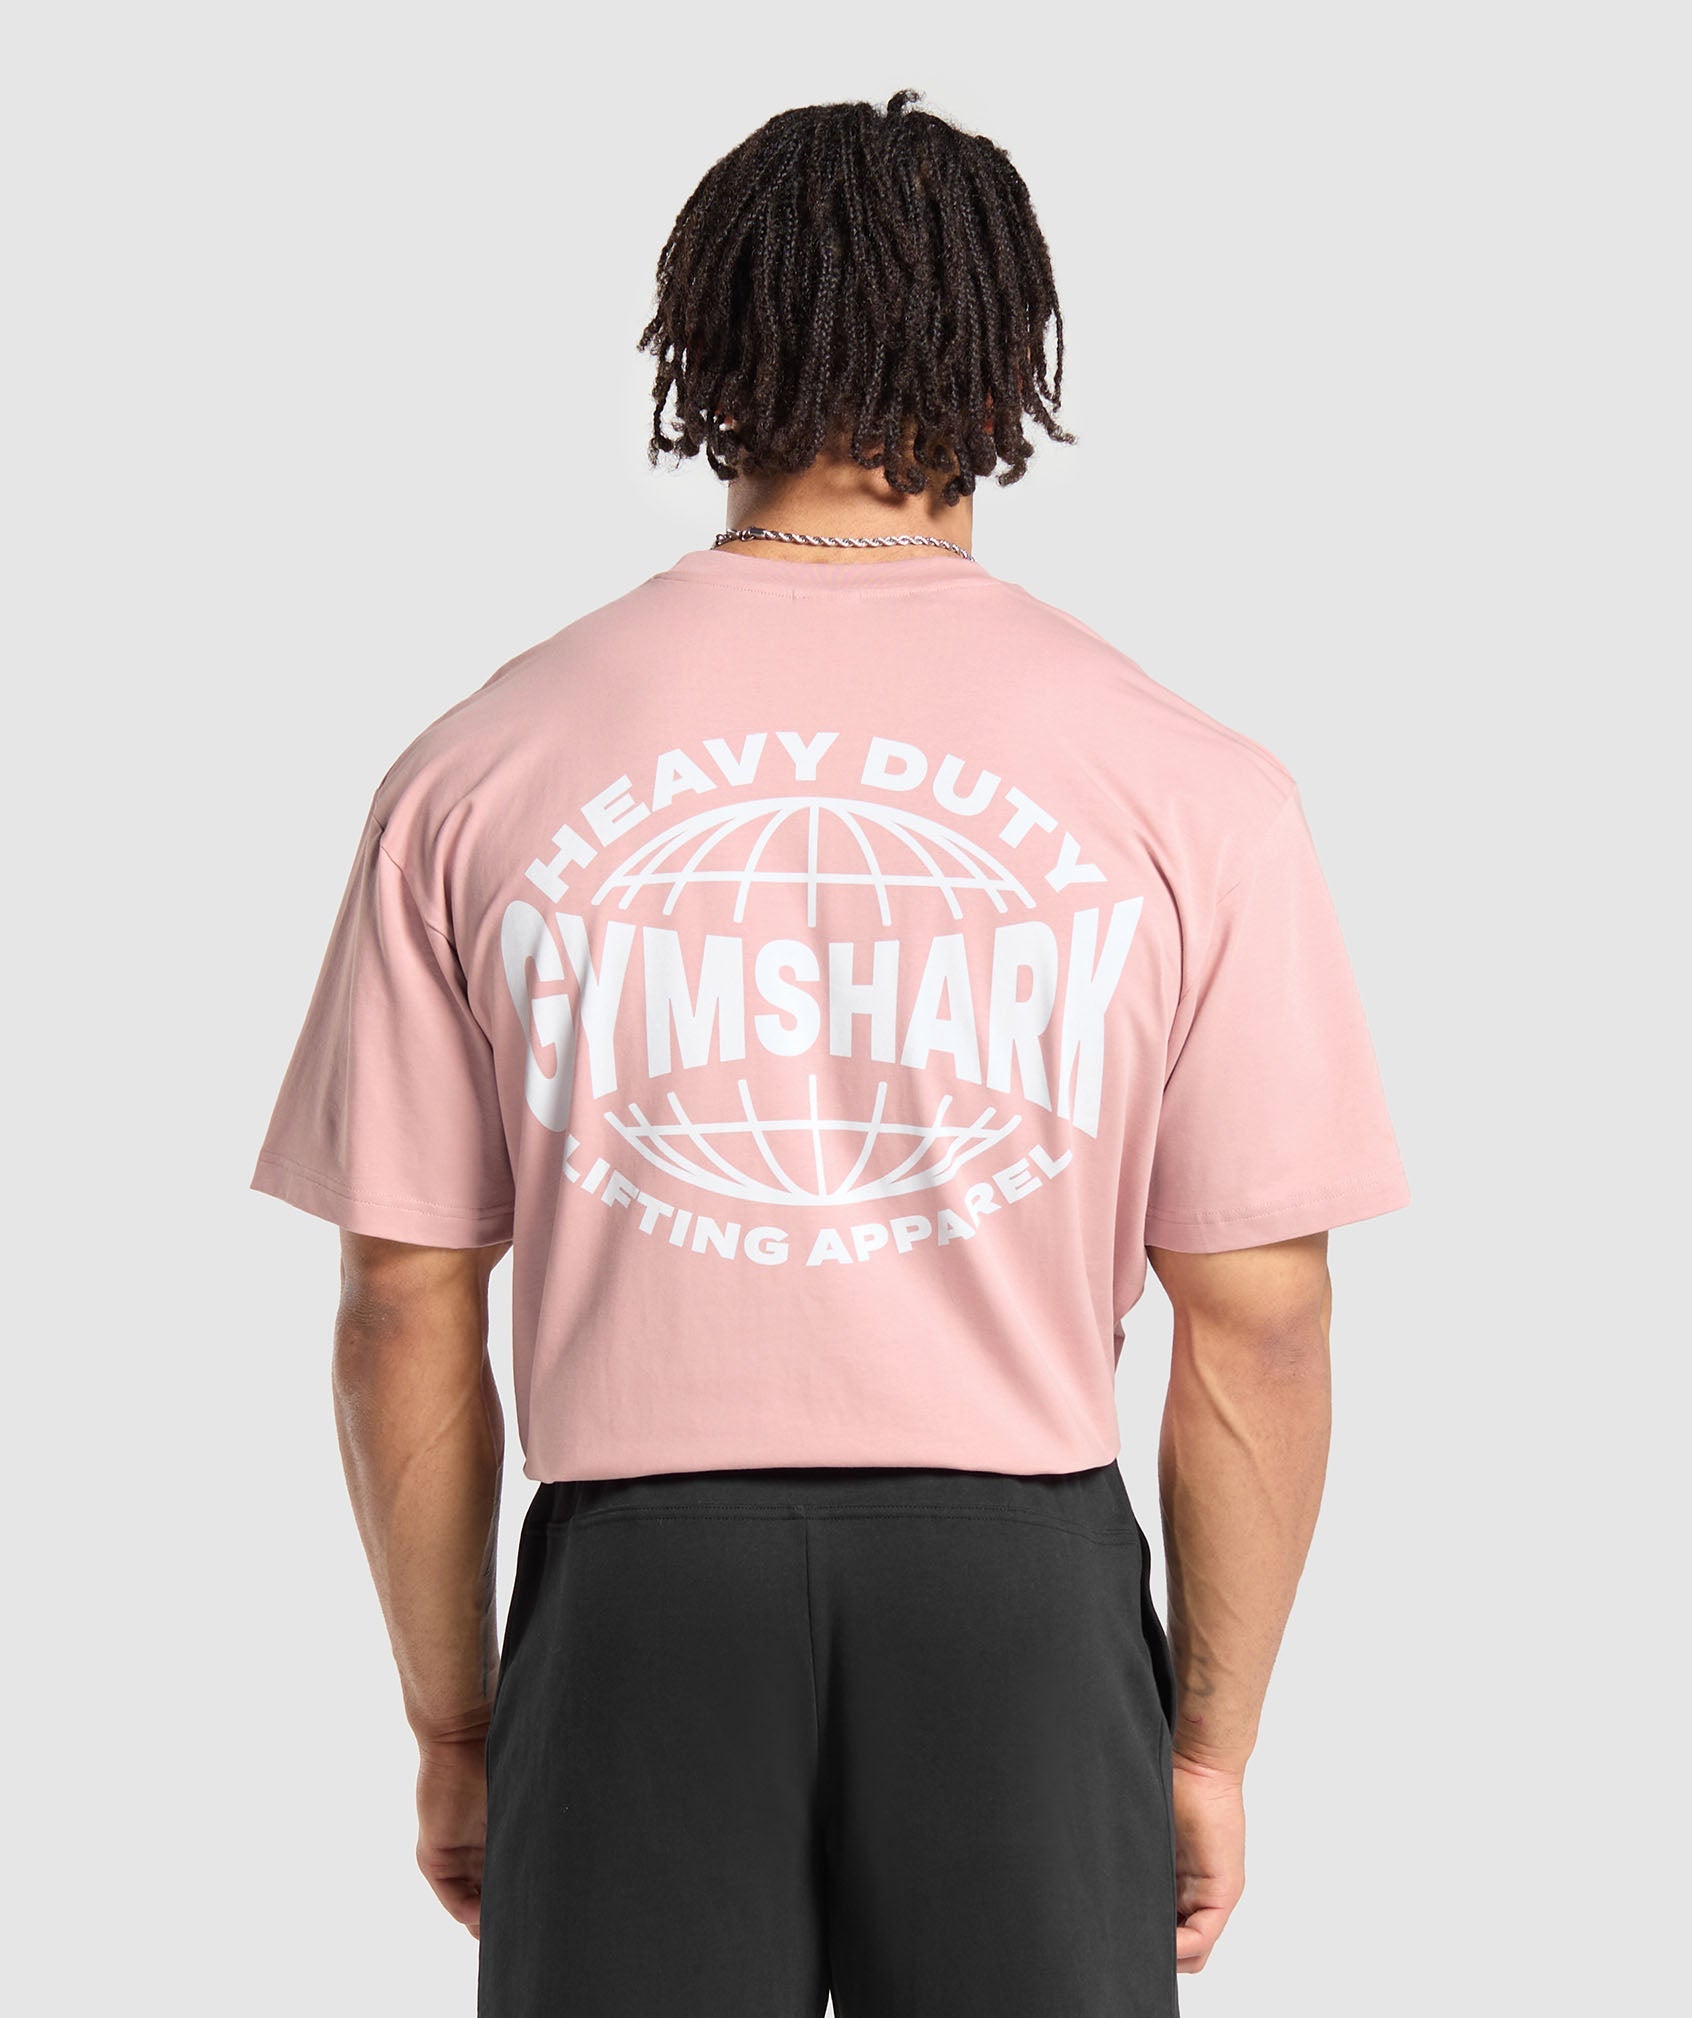 Heavy Duty Apparel T-Shirt en Light Pink